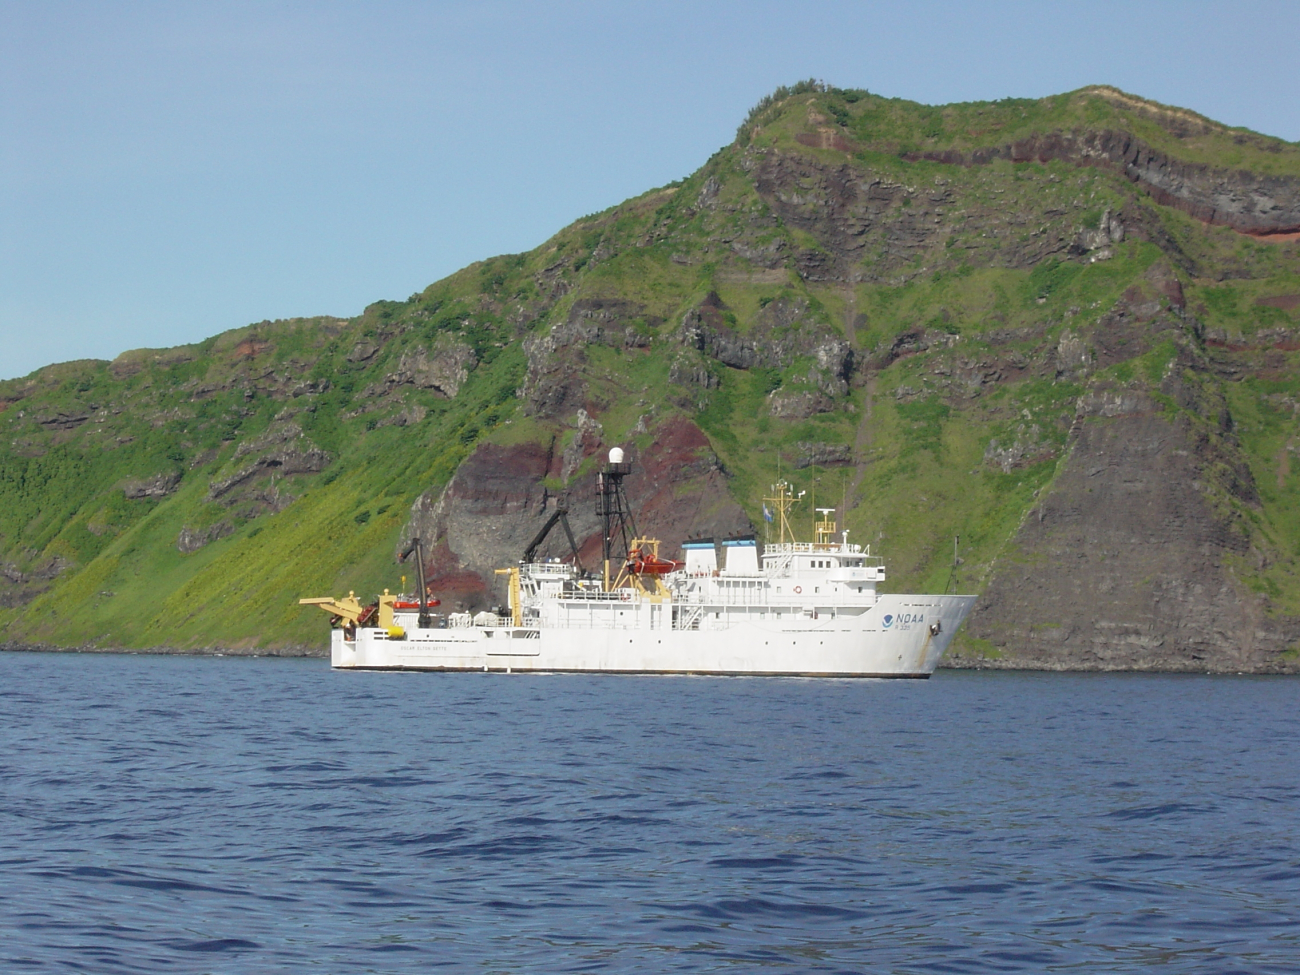 NOAA Ship OSCAR ELTON SETTE at anchor off a volcanic island